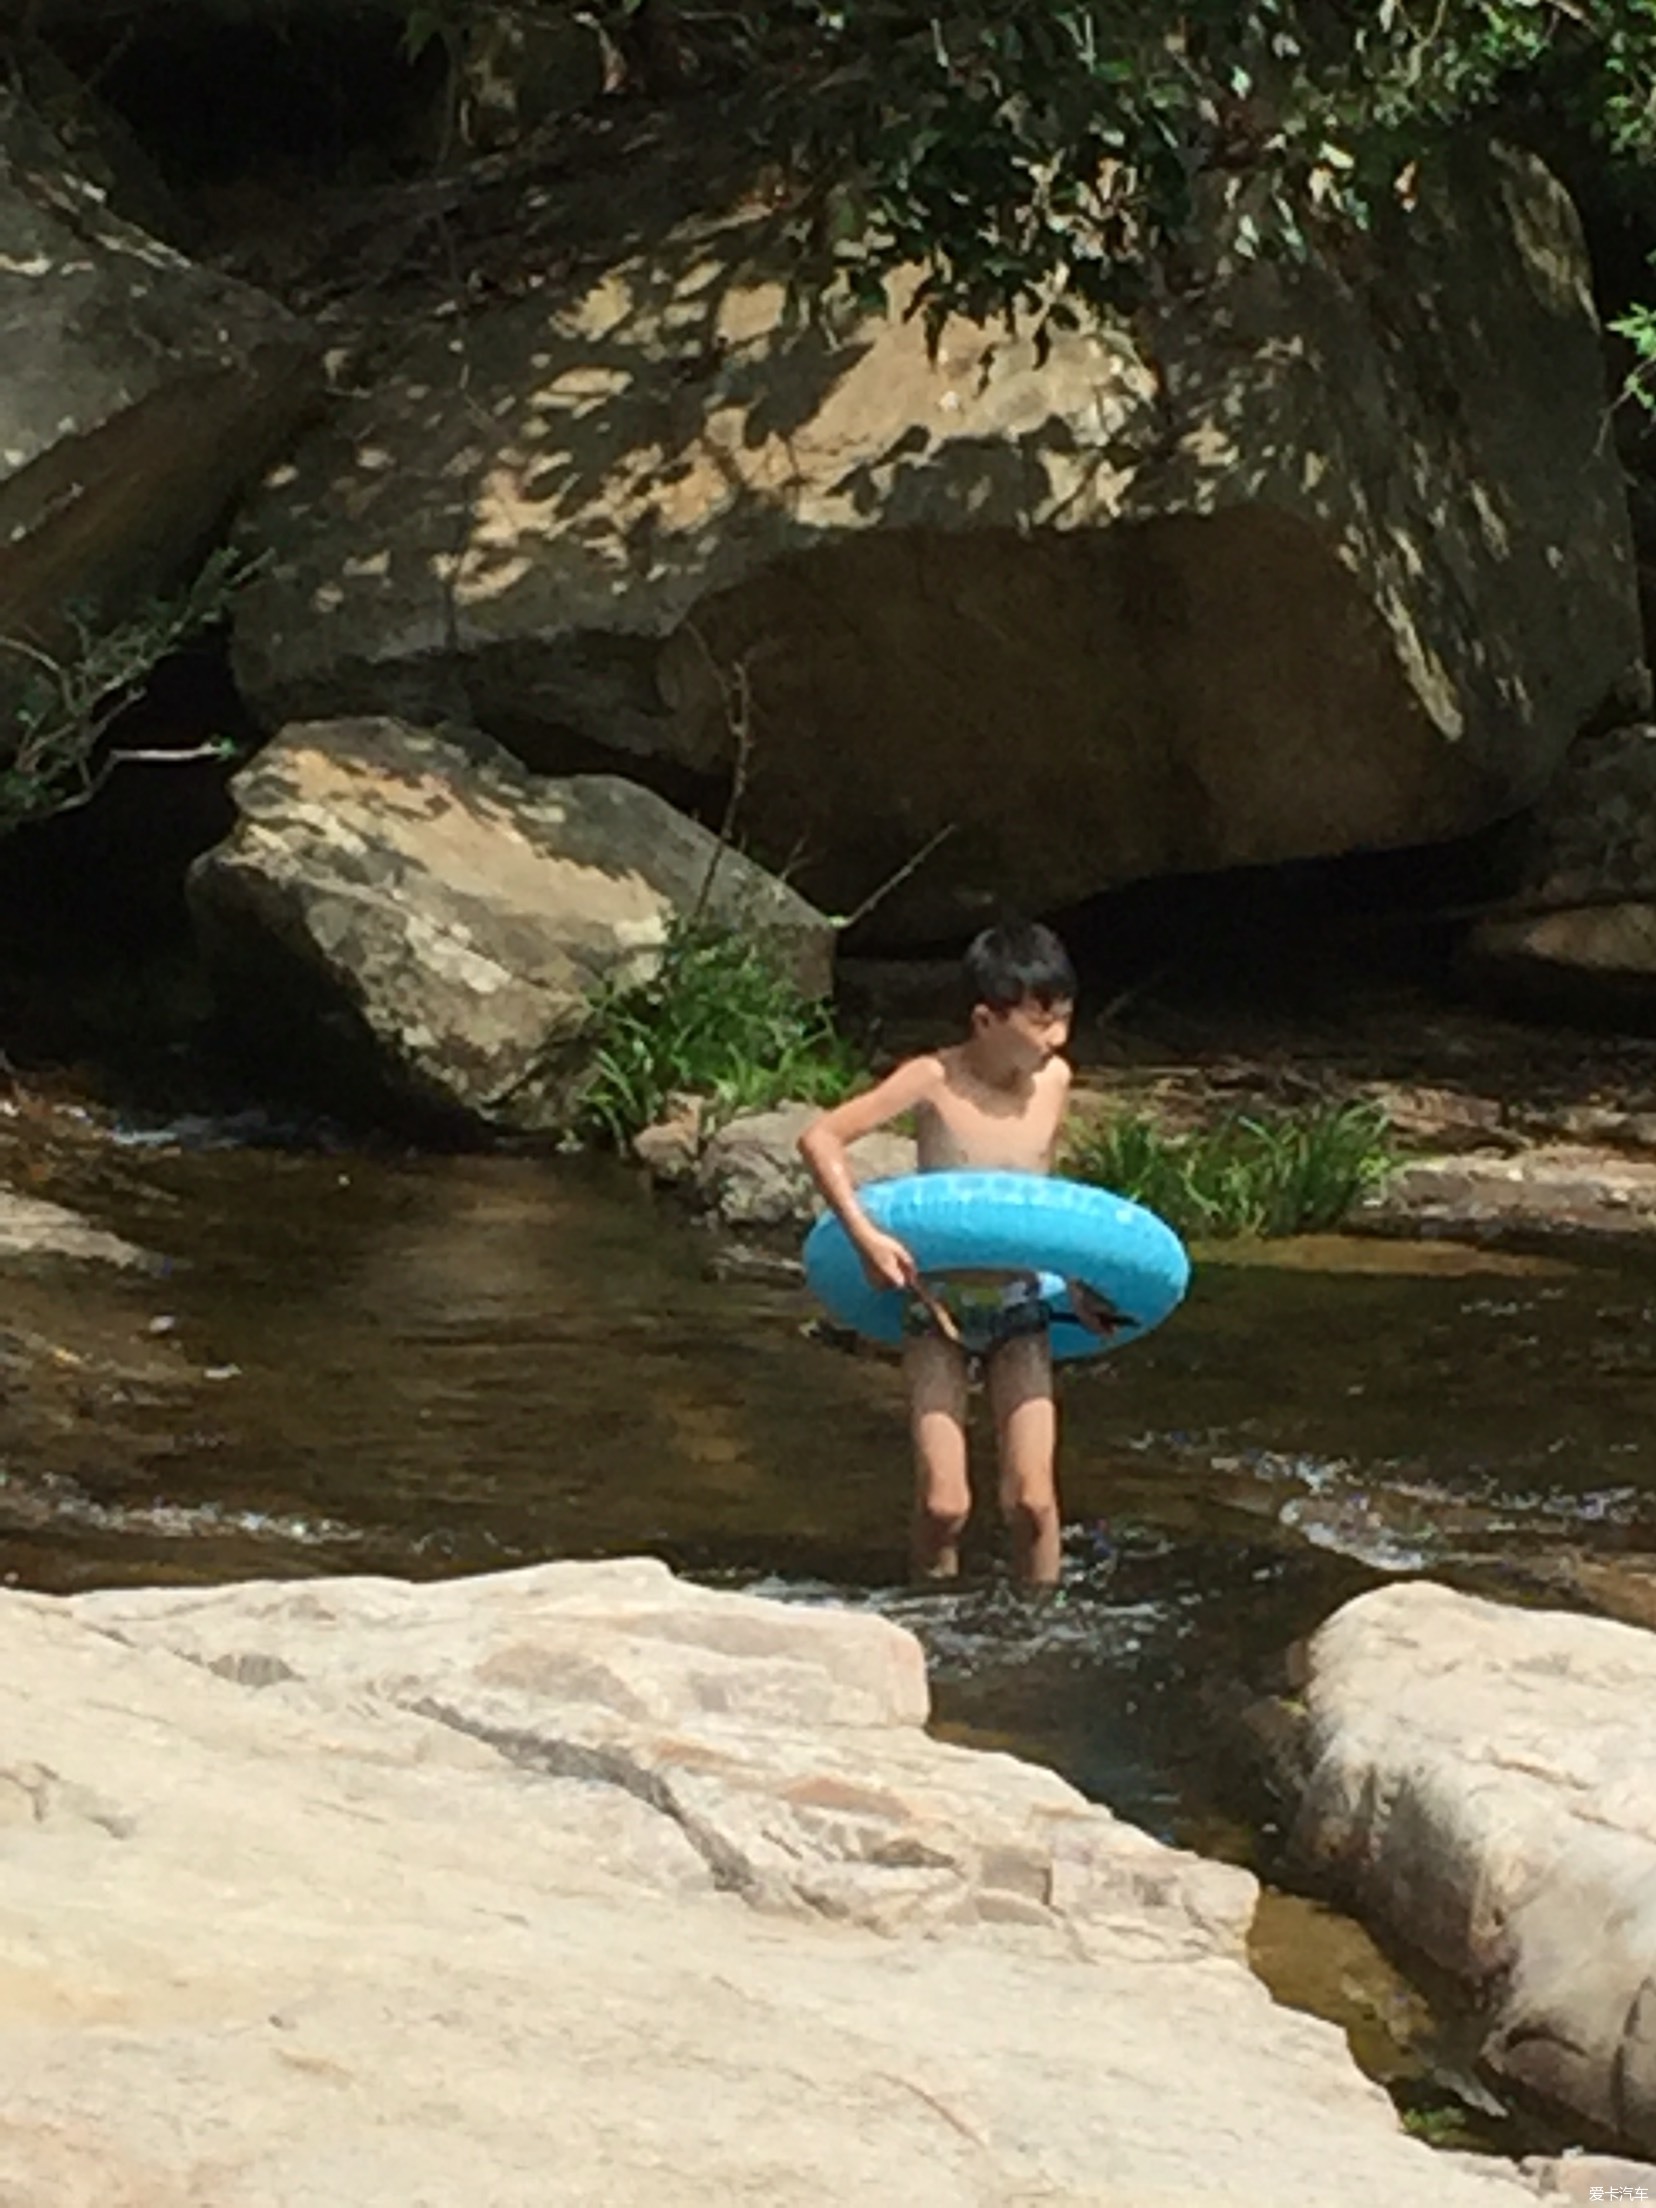                   小男孩在游泳